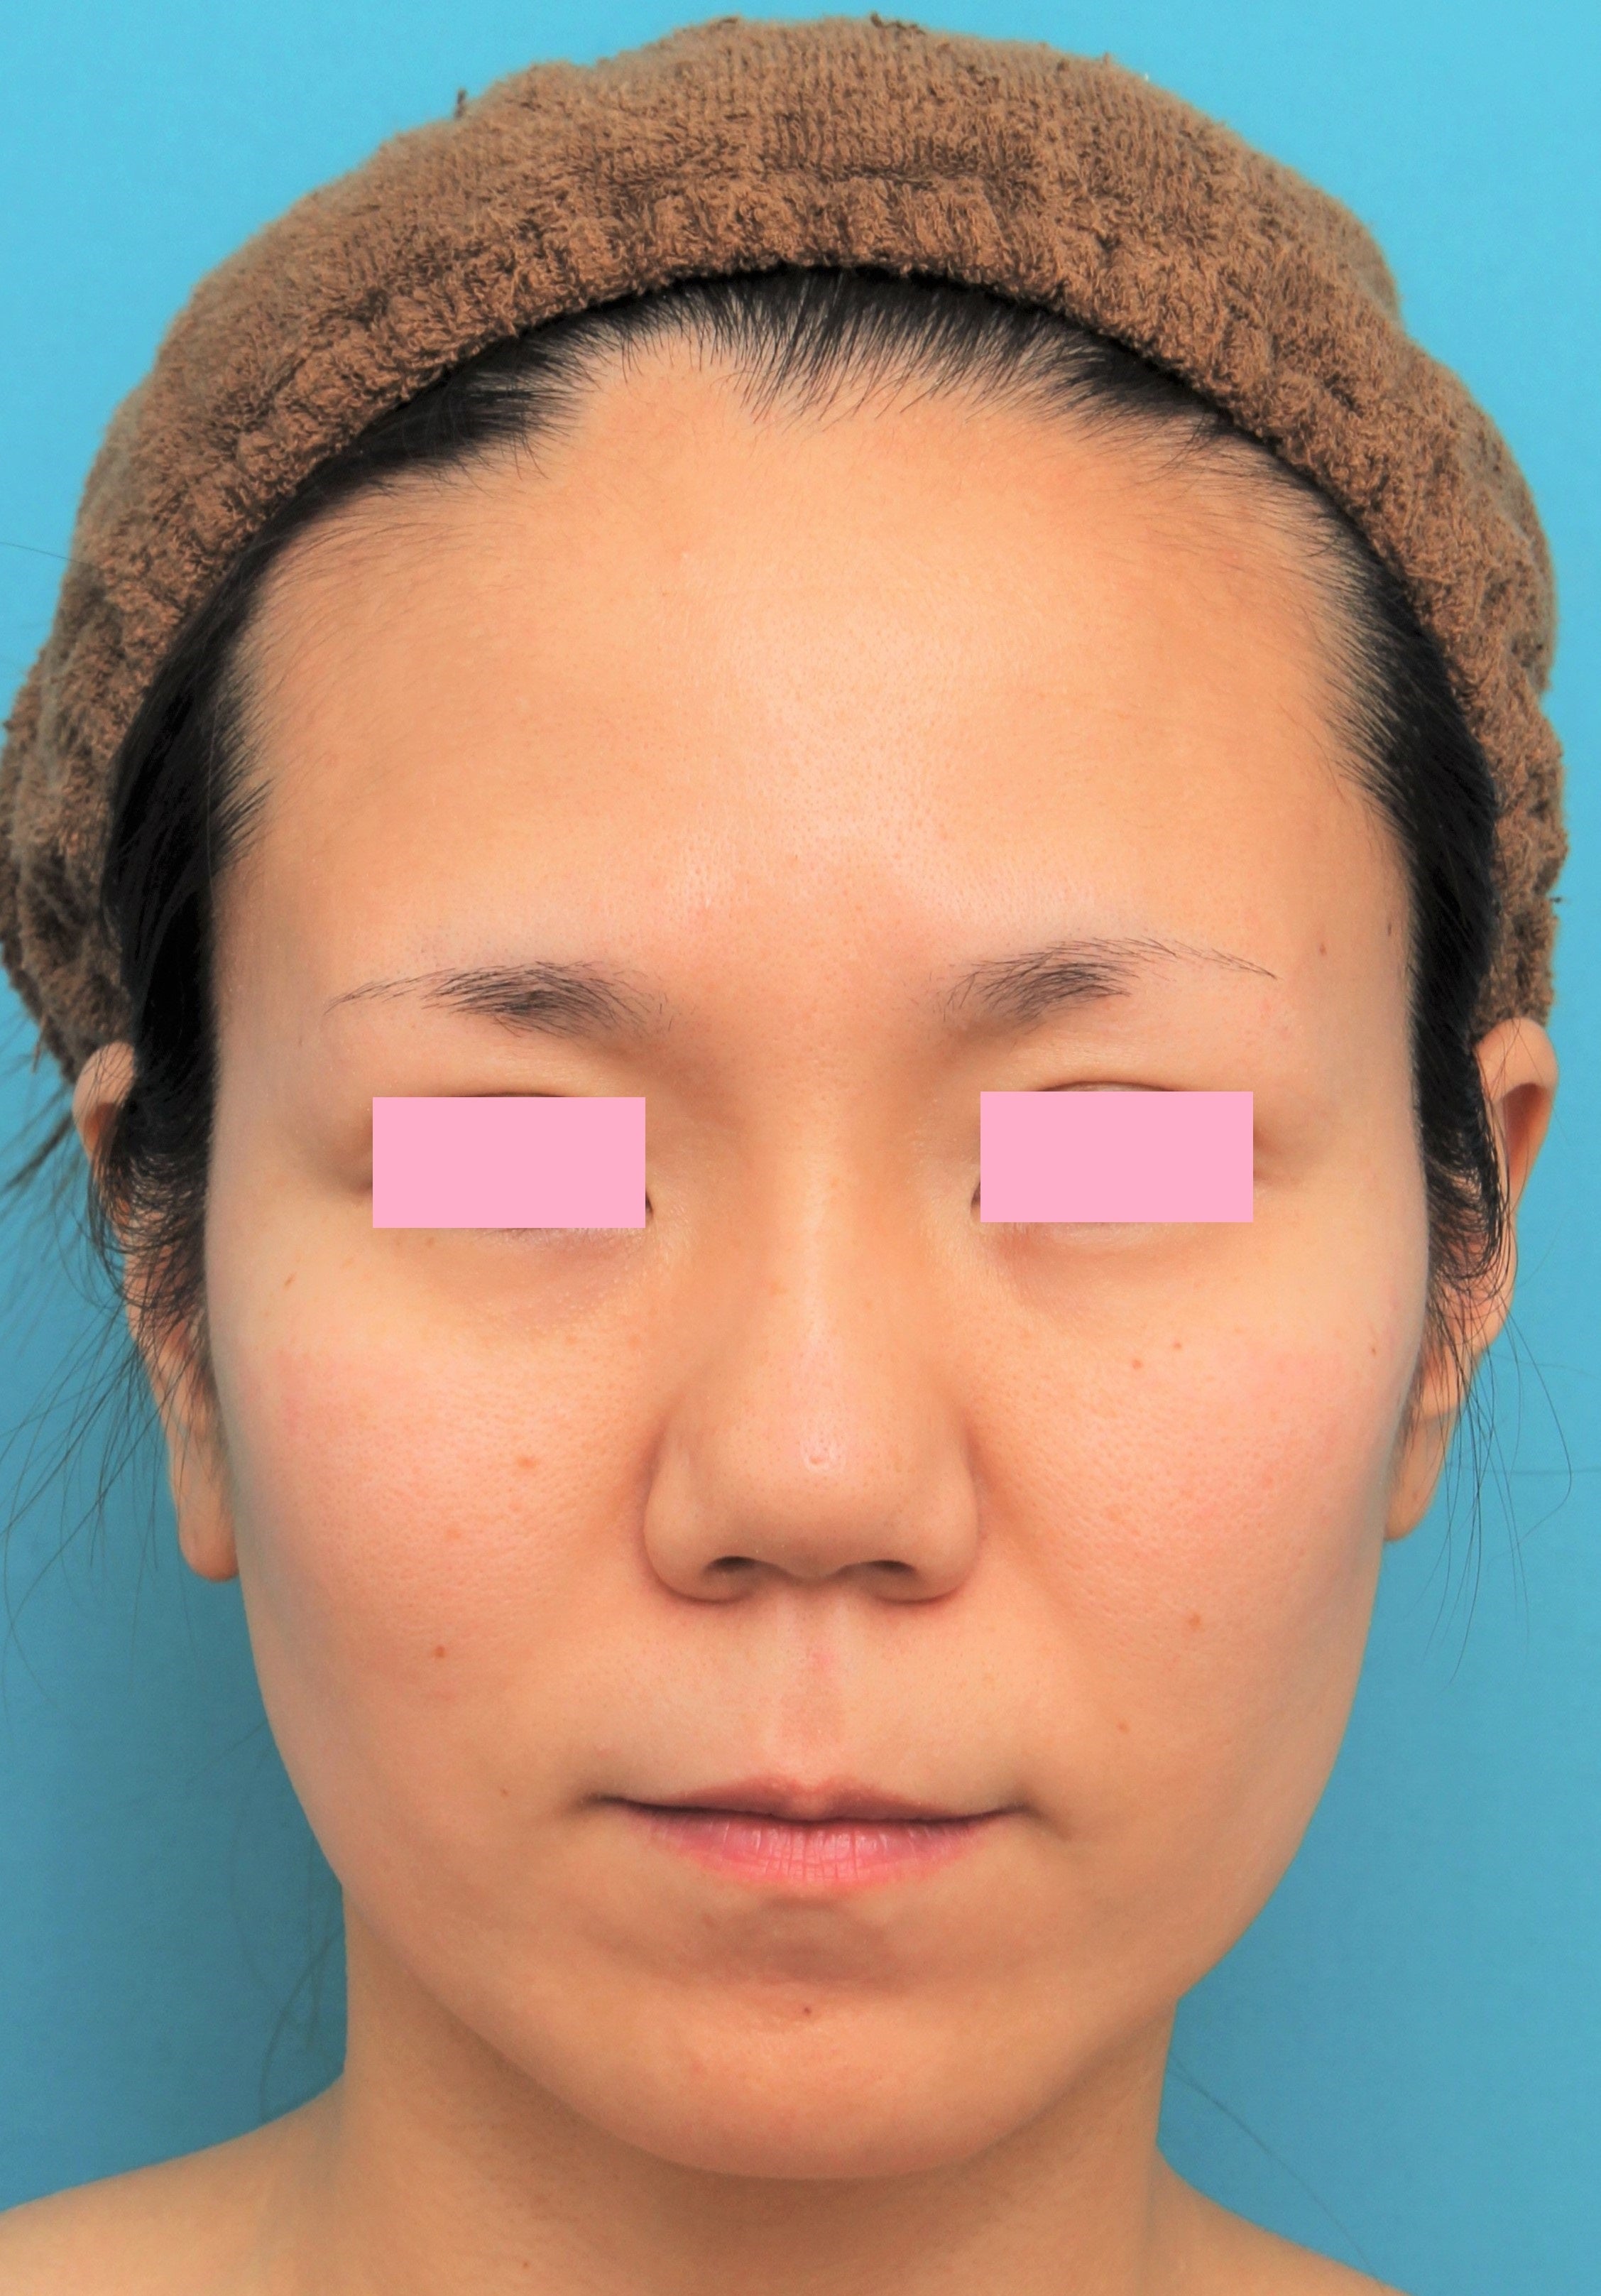 バッカルファット除去手術を行った30代女性の症例写真の解説です。 美容整形高須クリニック 高須 幹弥 オフィシャルブログ